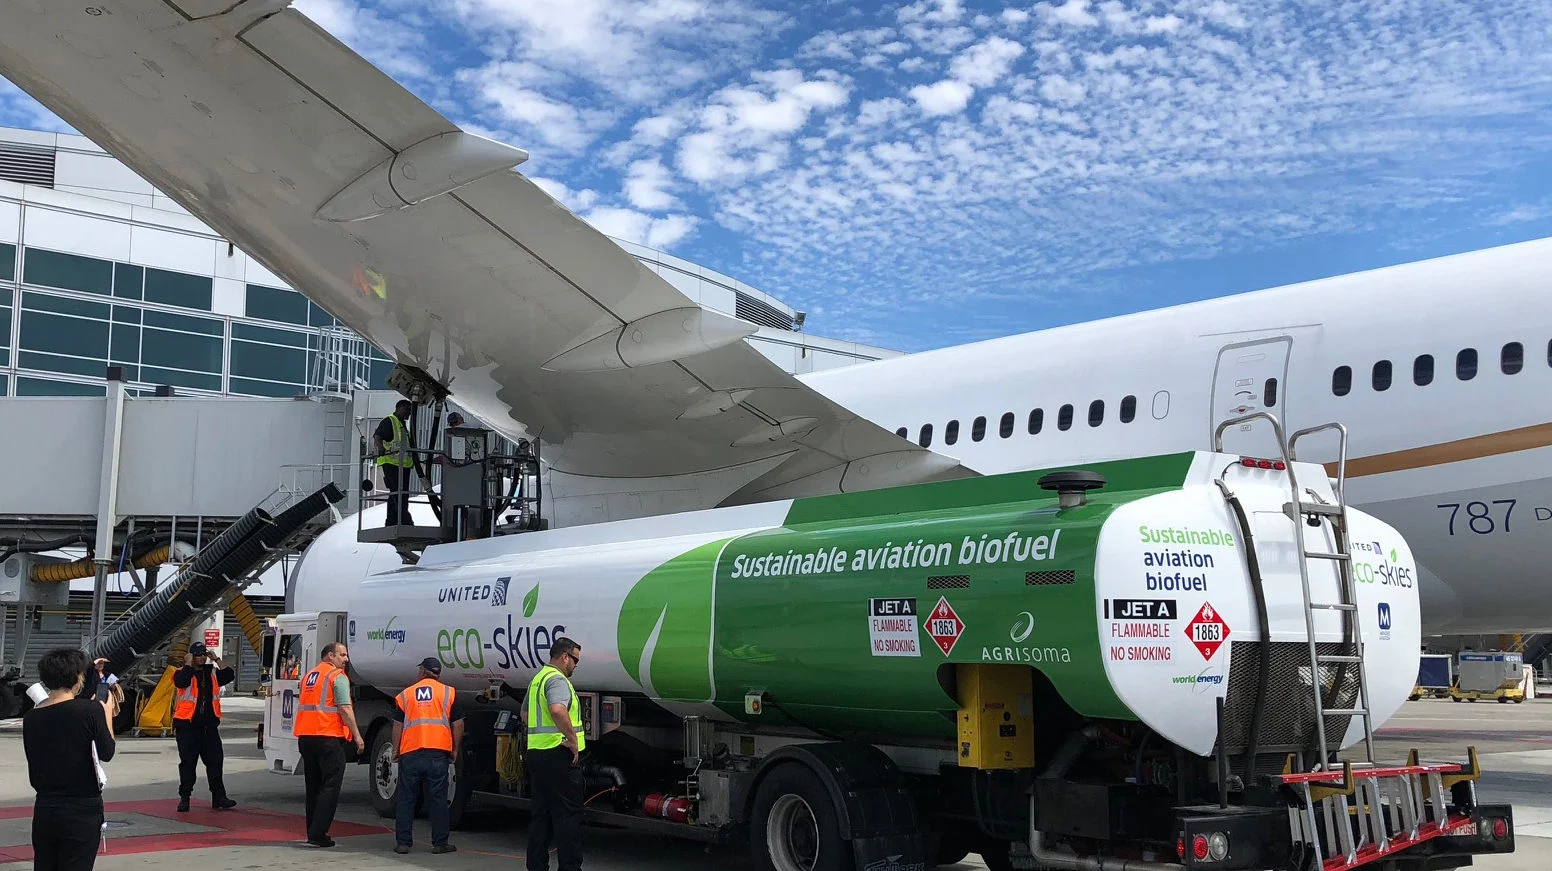 Carbono antigo e carbono moderno juntos: o coprocessamento de cargas sustentáveis de biomassa. Na imagem: Biocombustível de aviação abastece aeronave da United no Aeroporto Internacional de São Francisco, nos EUA (Foto: Divulgação)